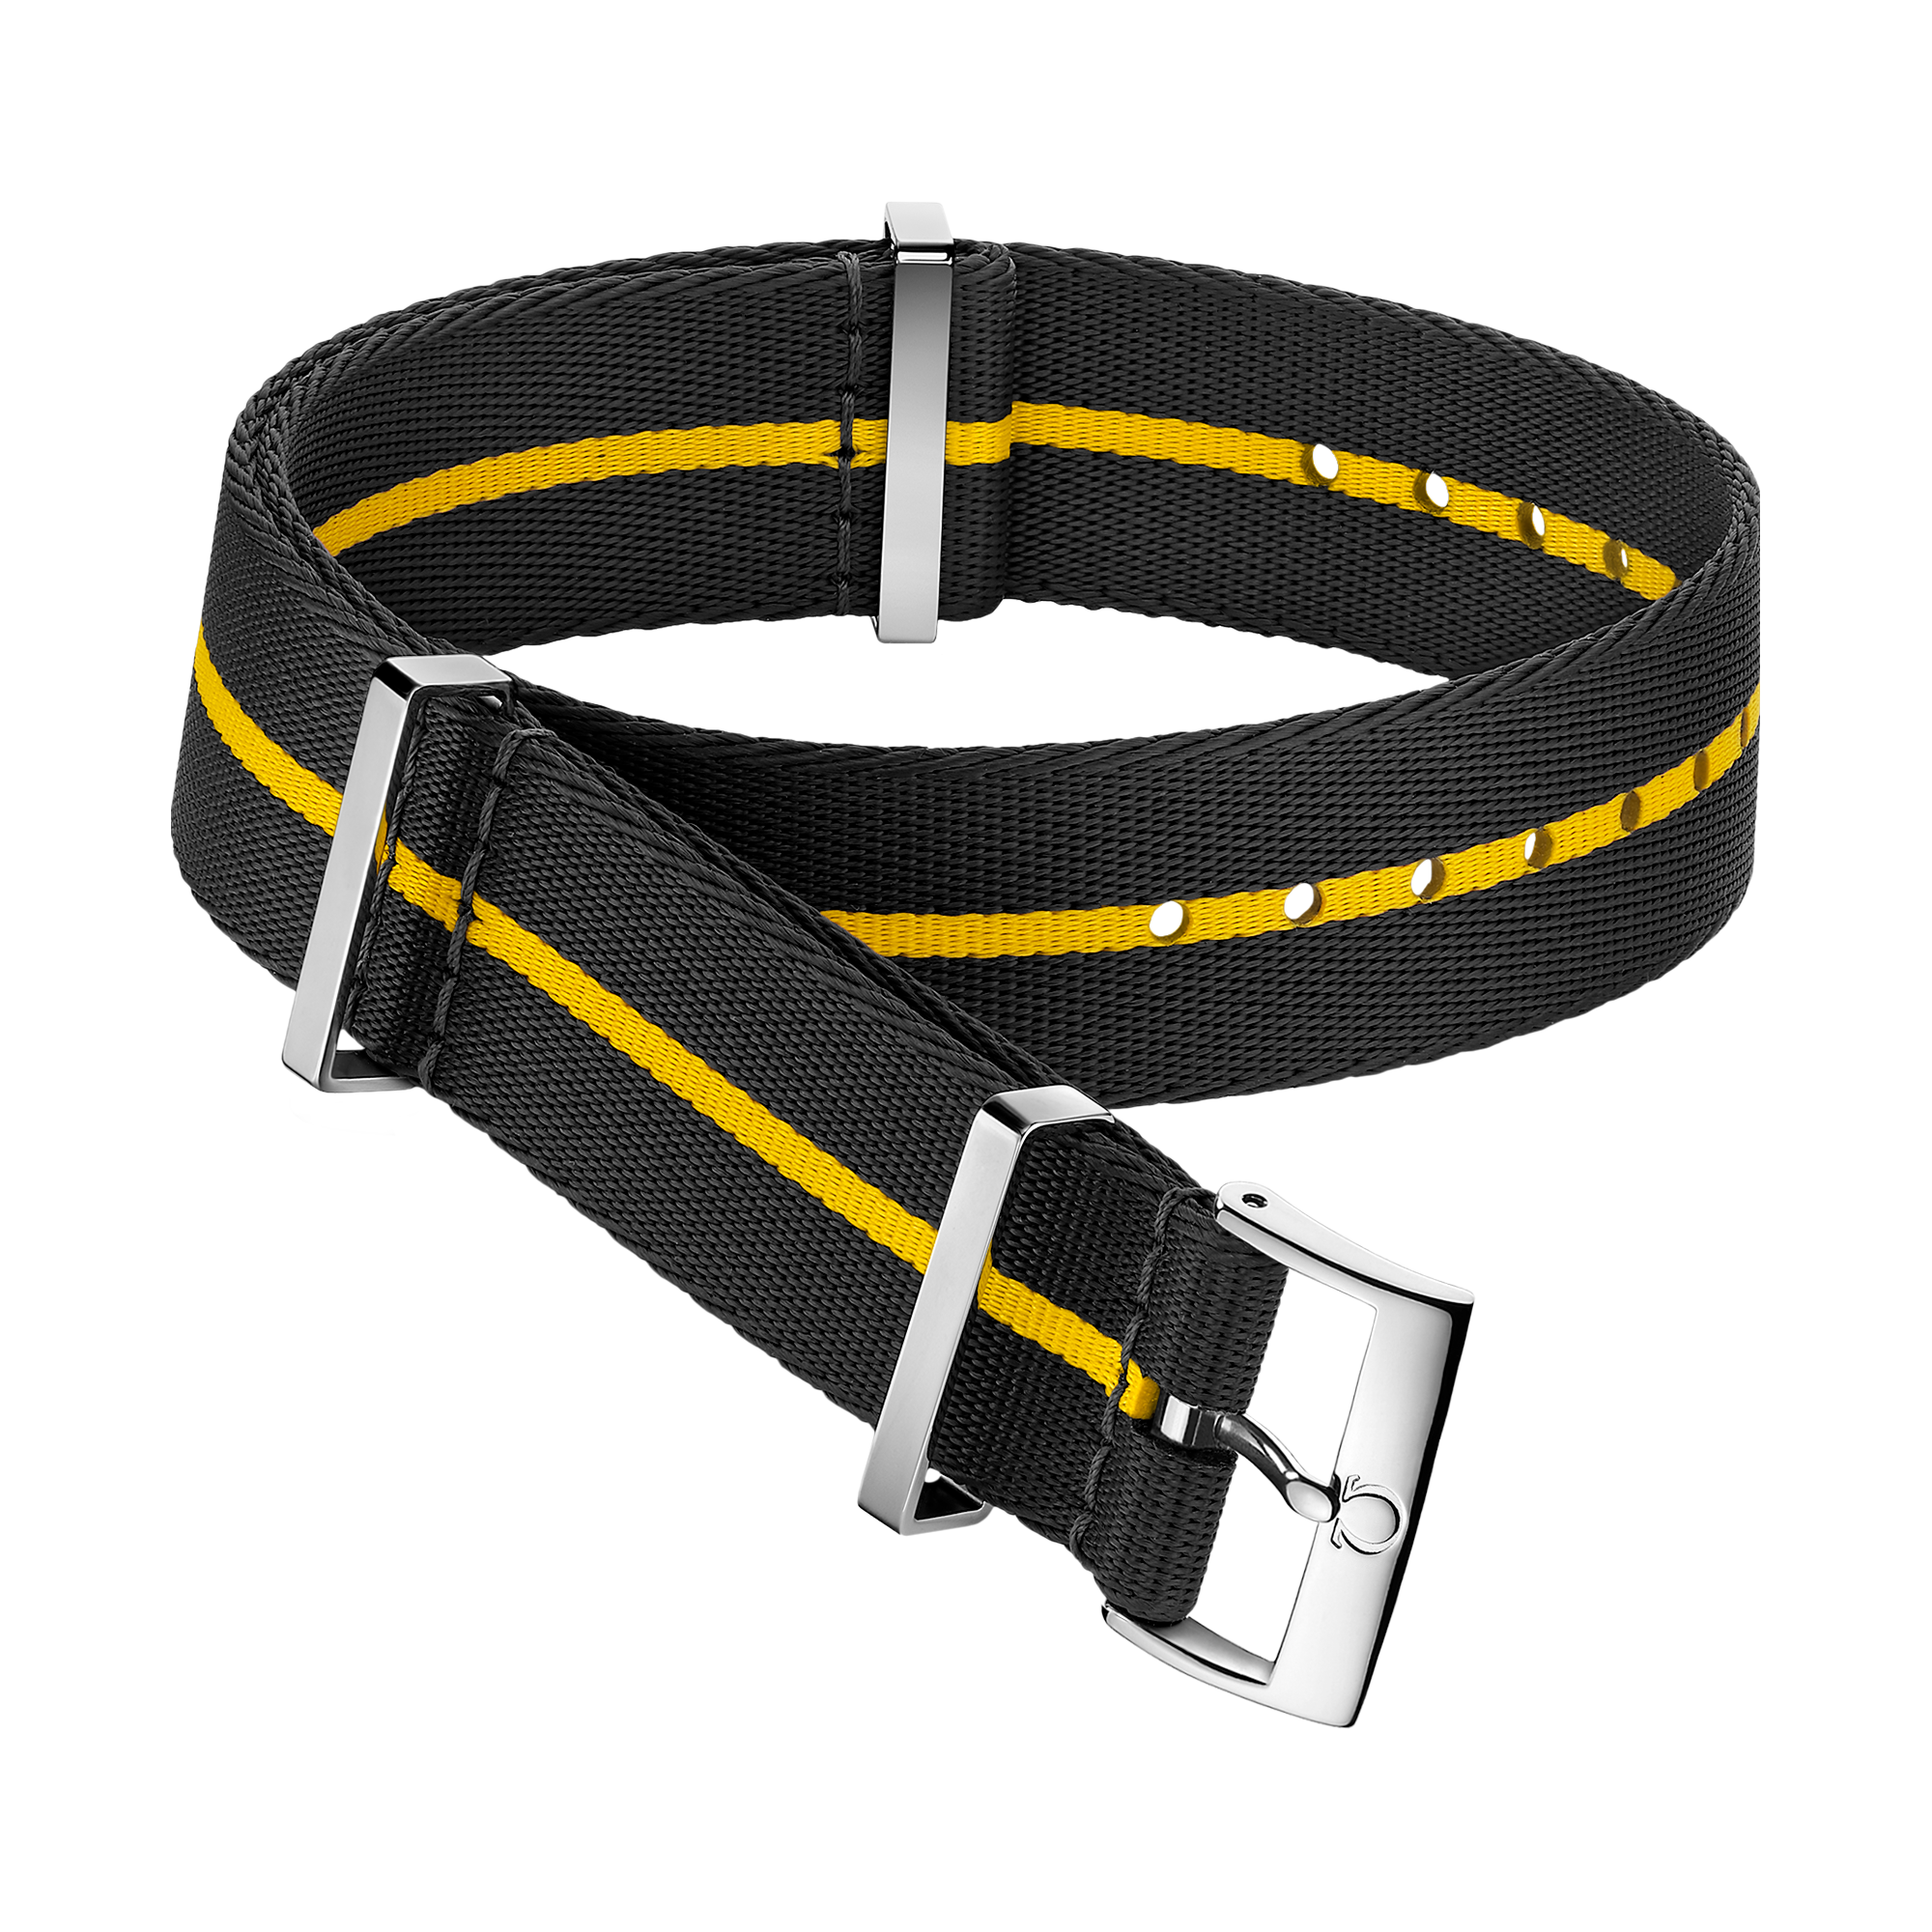 NATO strap - Polyamide black strap with yellow stripe  - 031CWZ014680